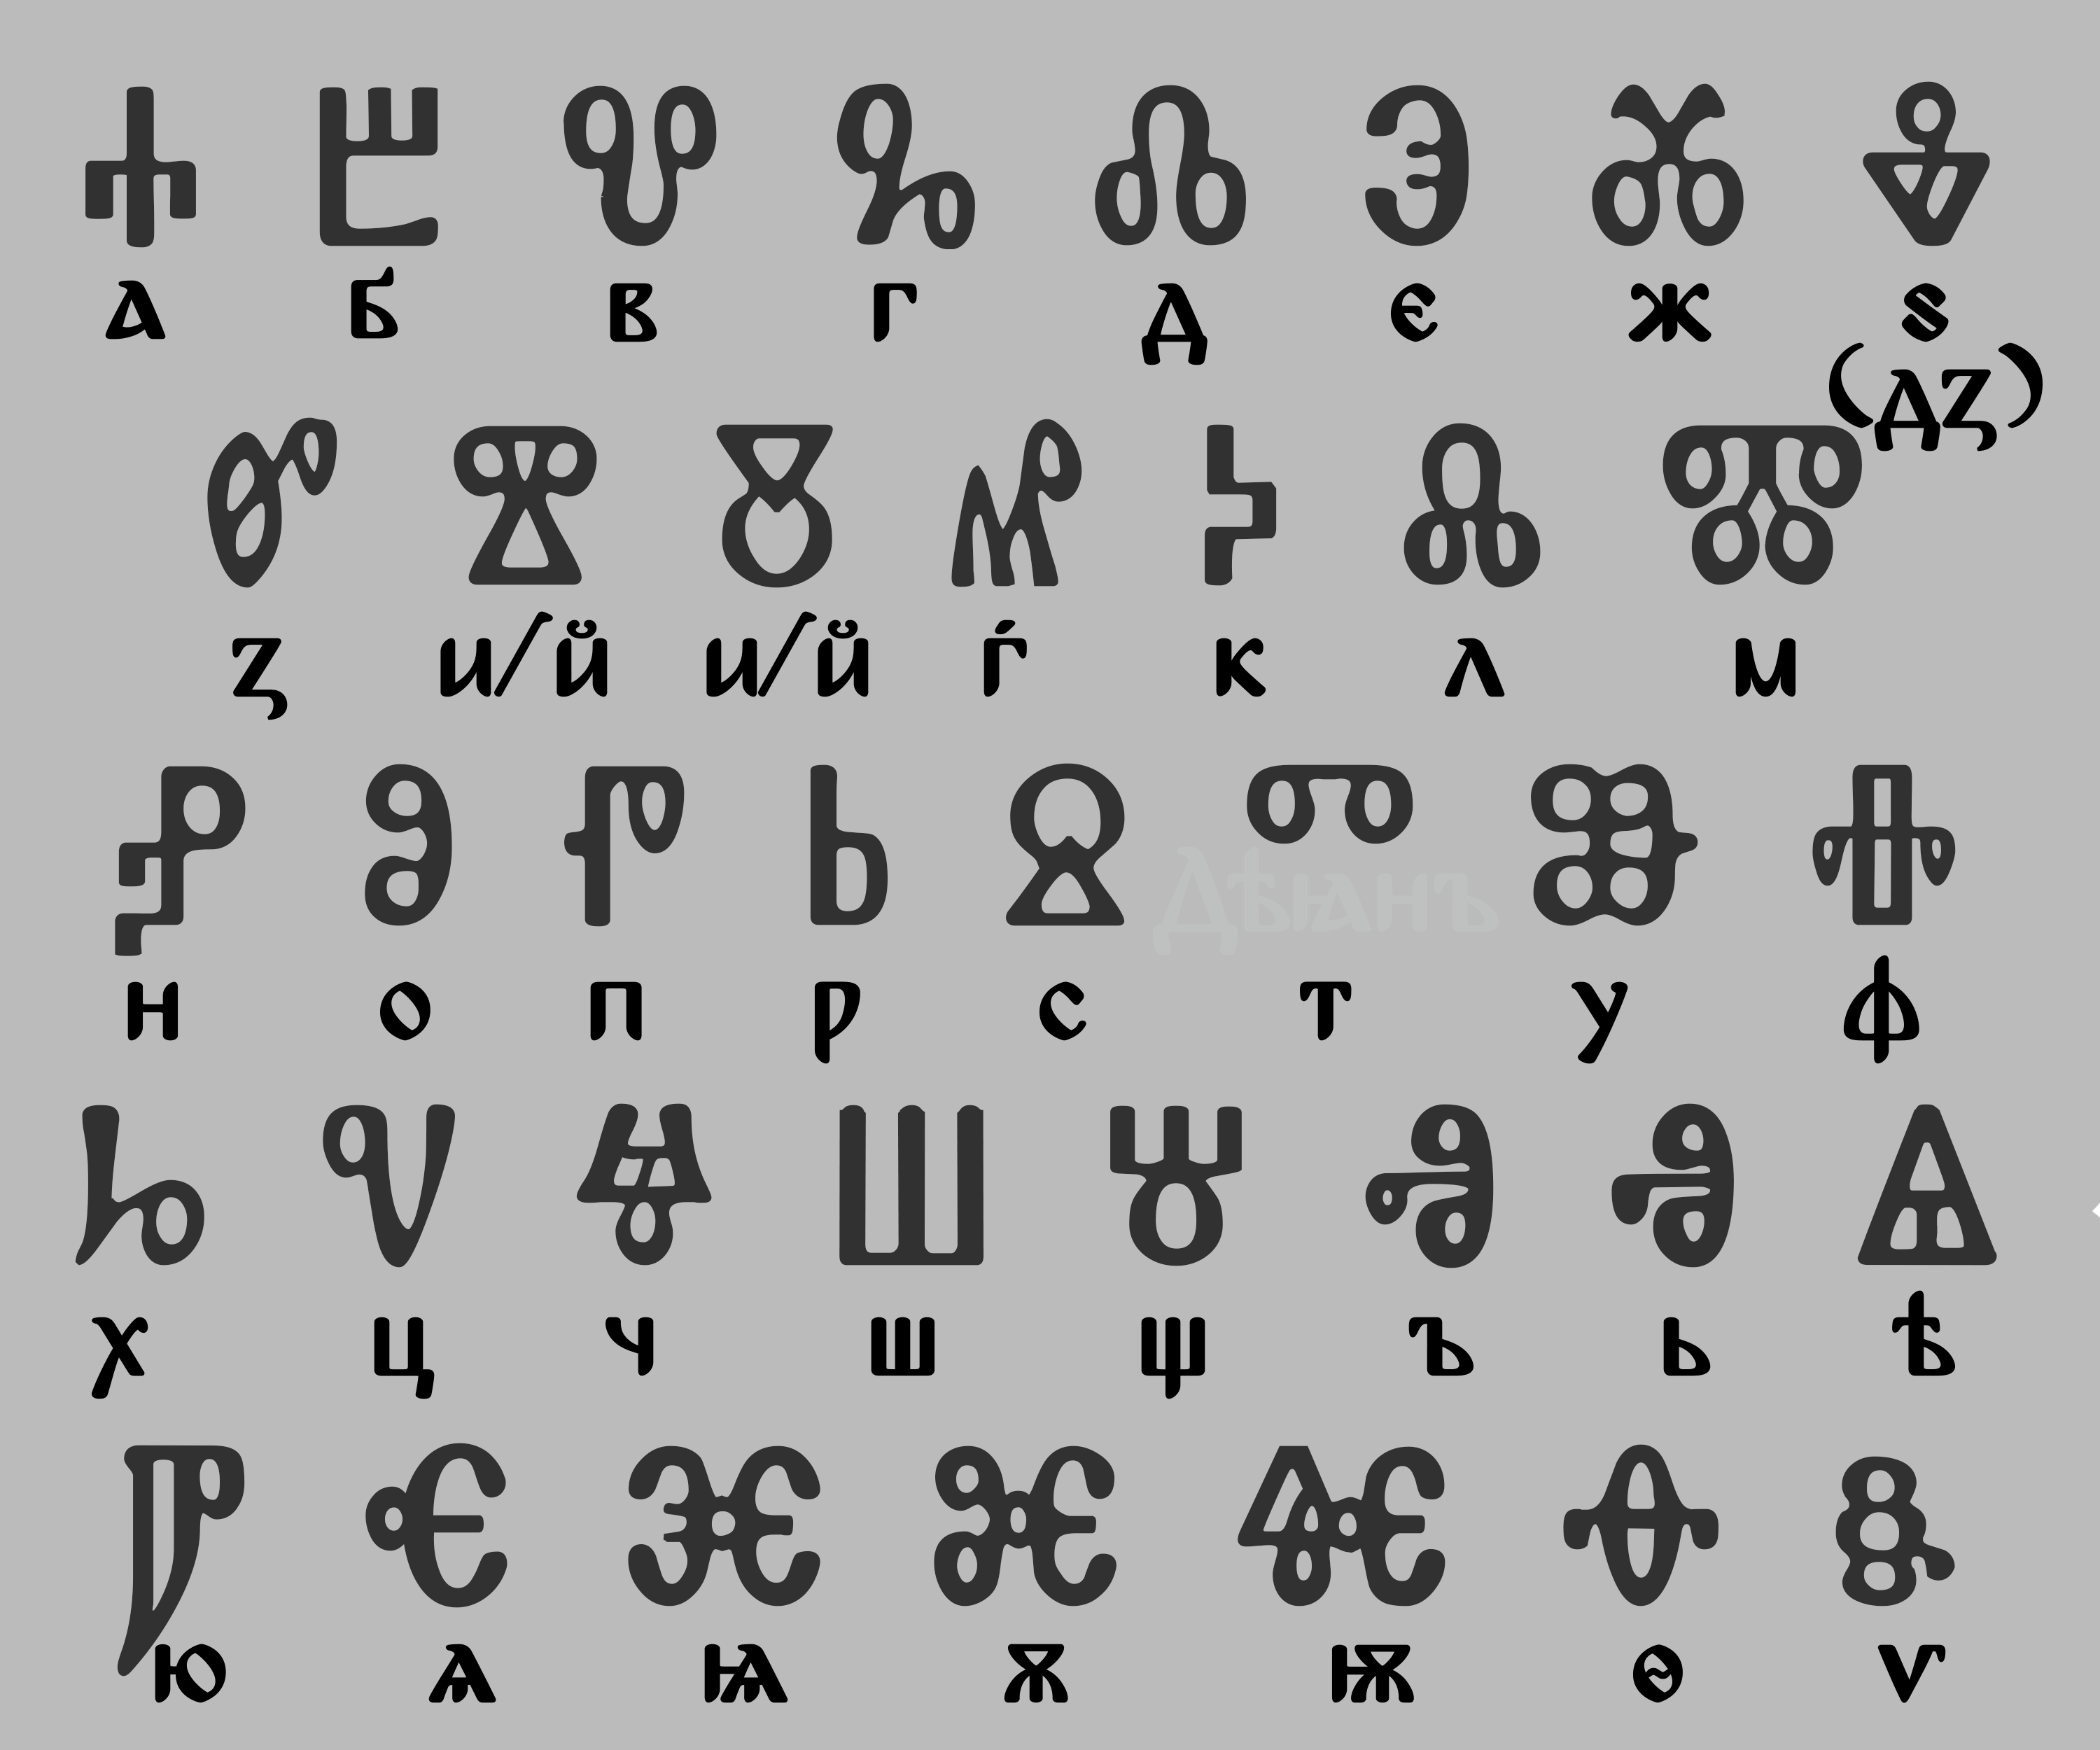 Почему алфавит русского языка поменяли с глаголицы на кириллицу — чем она не устраивала?